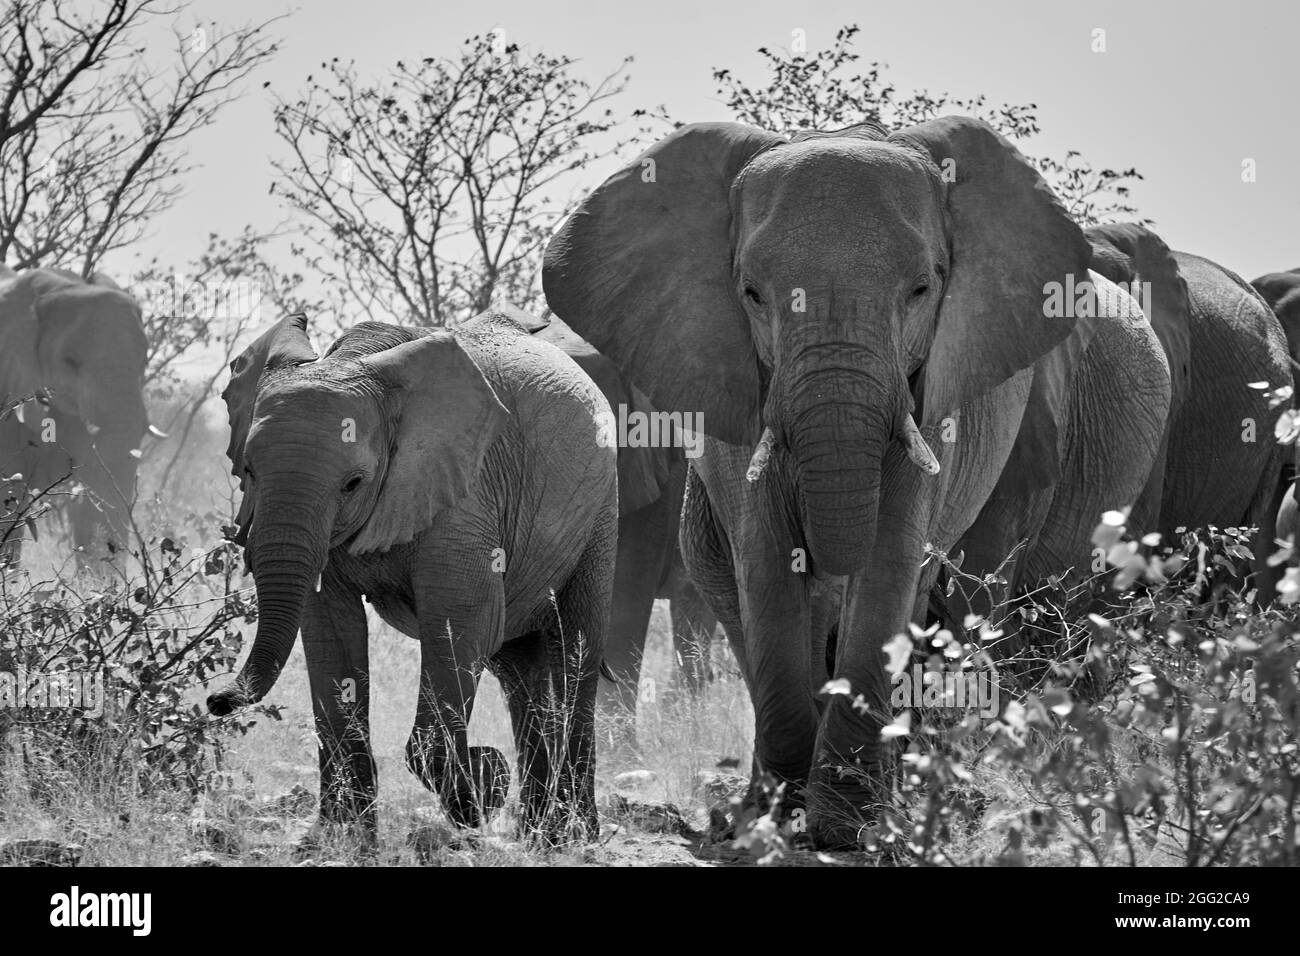 Herde afrikanischer Elefanten (Loxodonta africana), die in Namibia in Richtung Kamera wandern. Safari Tiere schwarz und weiß. Stockfoto